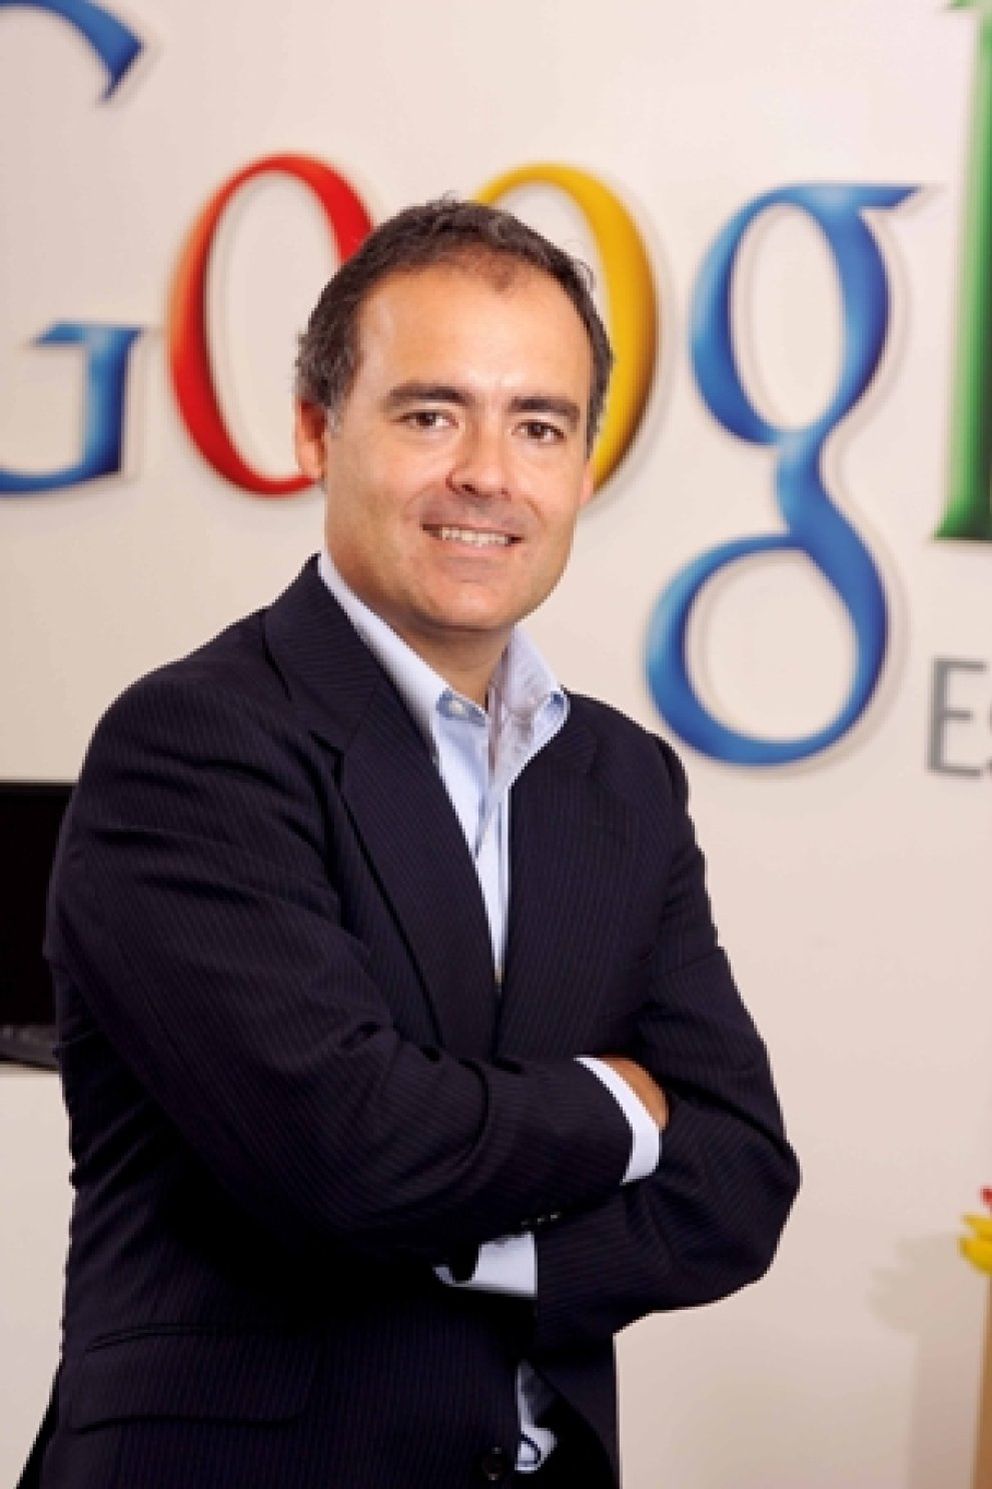 Foto: Rodríguez Zapatero (Google): "Internet genera un valor incalculable para la sociedad"